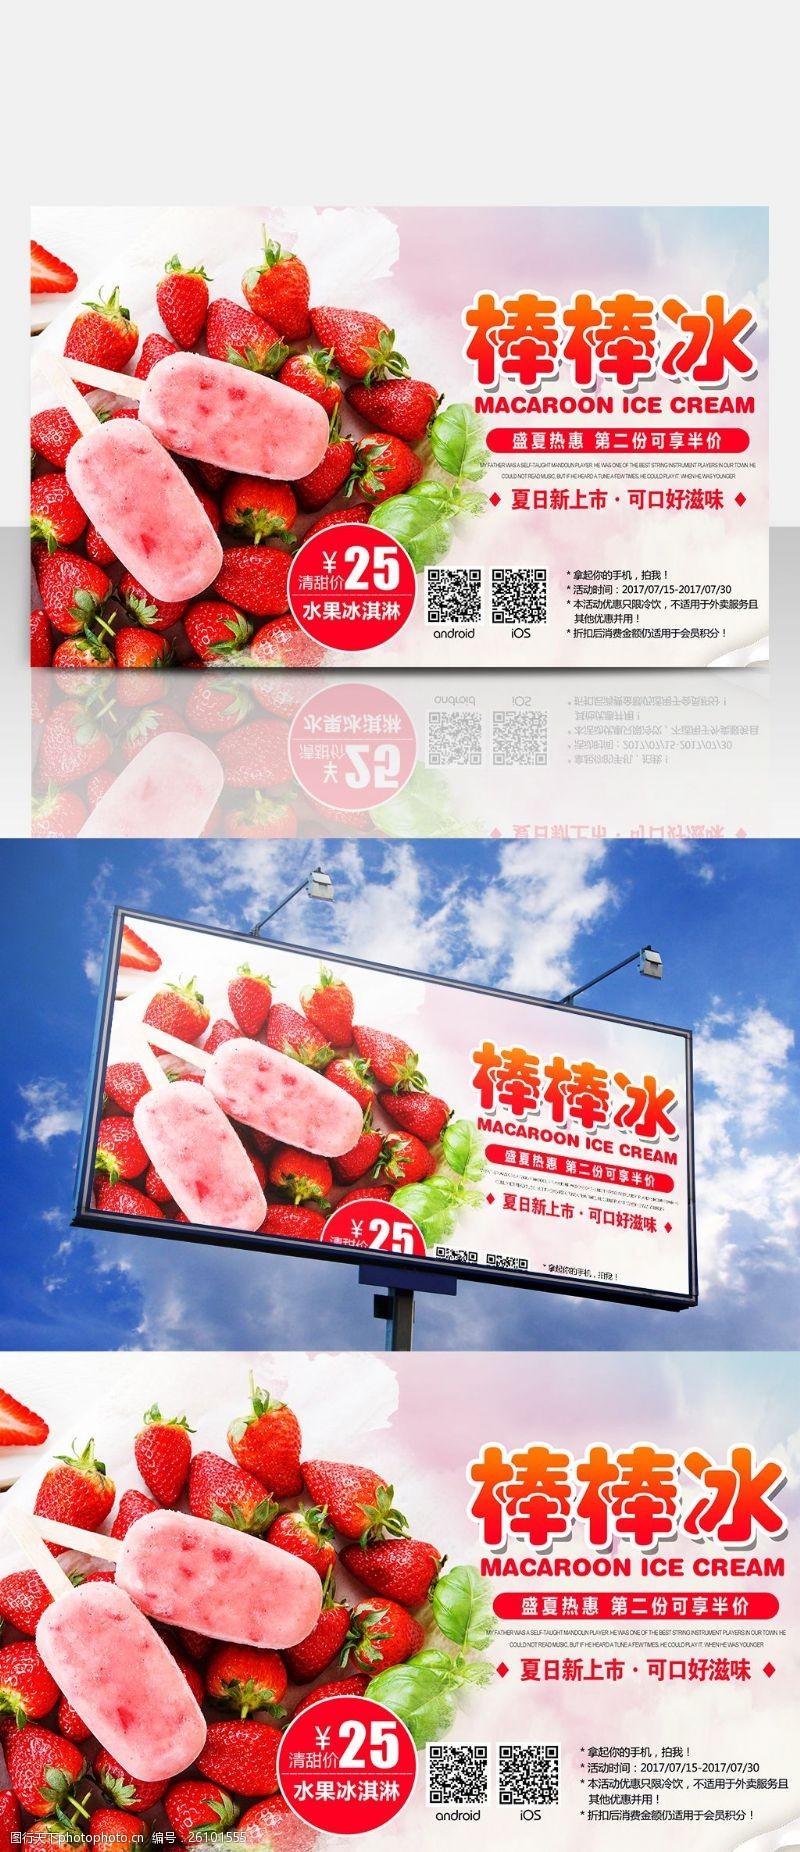 冰激凌模板下载粉红色调夏日夏季草莓水果雪糕冰淇淋海报